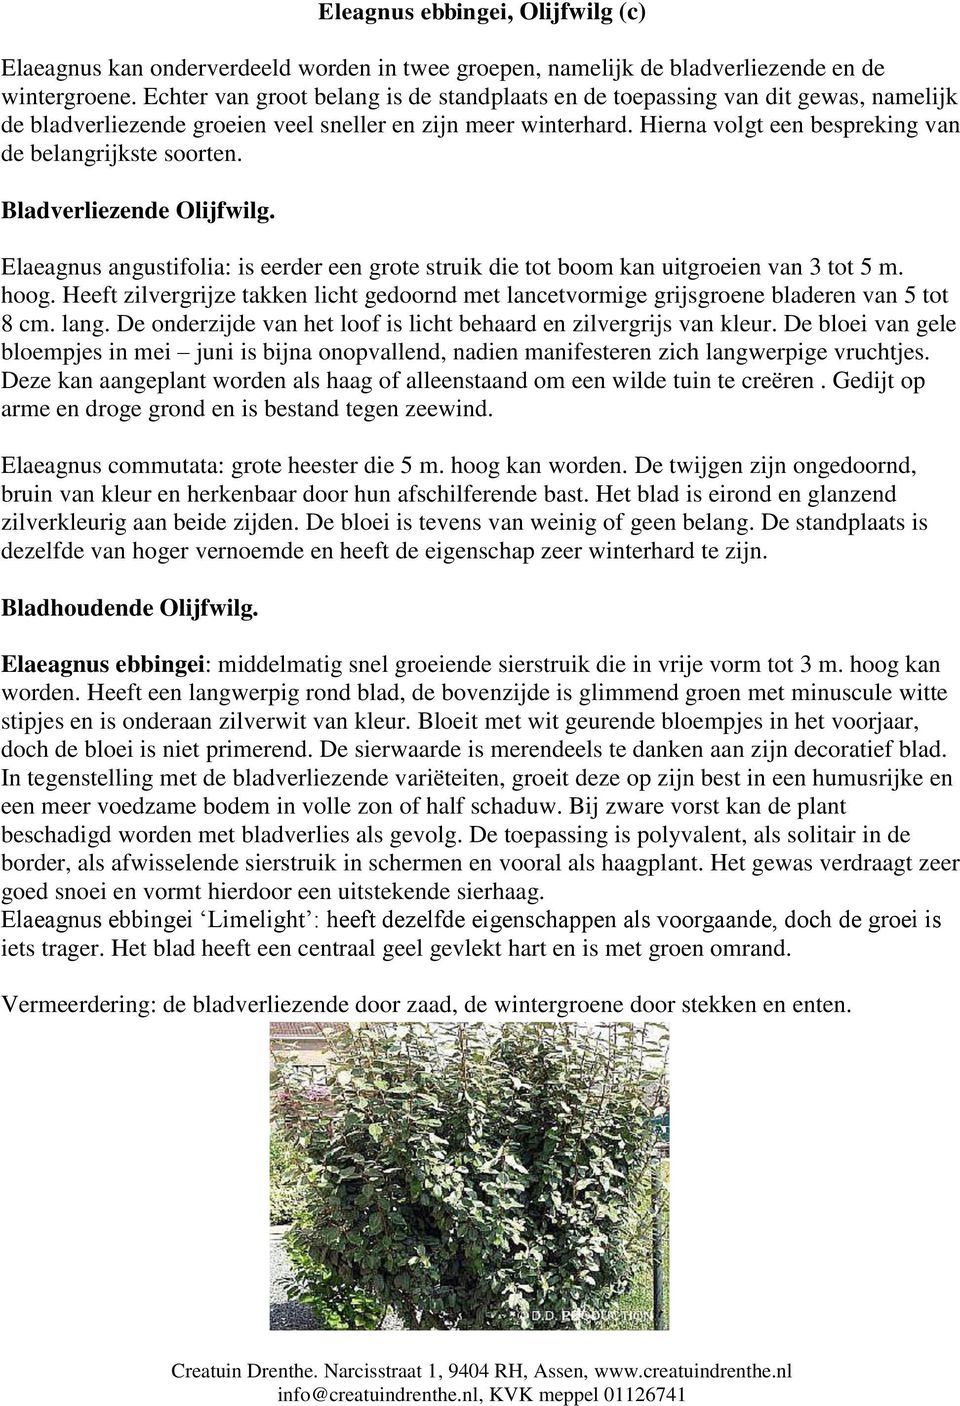 Hierna volgt een bespreking van de belangrijkste soorten. Bladverliezende Olijfwilg. Elaeagnus angustifolia: is eerder een grote struik die tot boom kan uitgroeien van 3 tot 5 m. hoog.